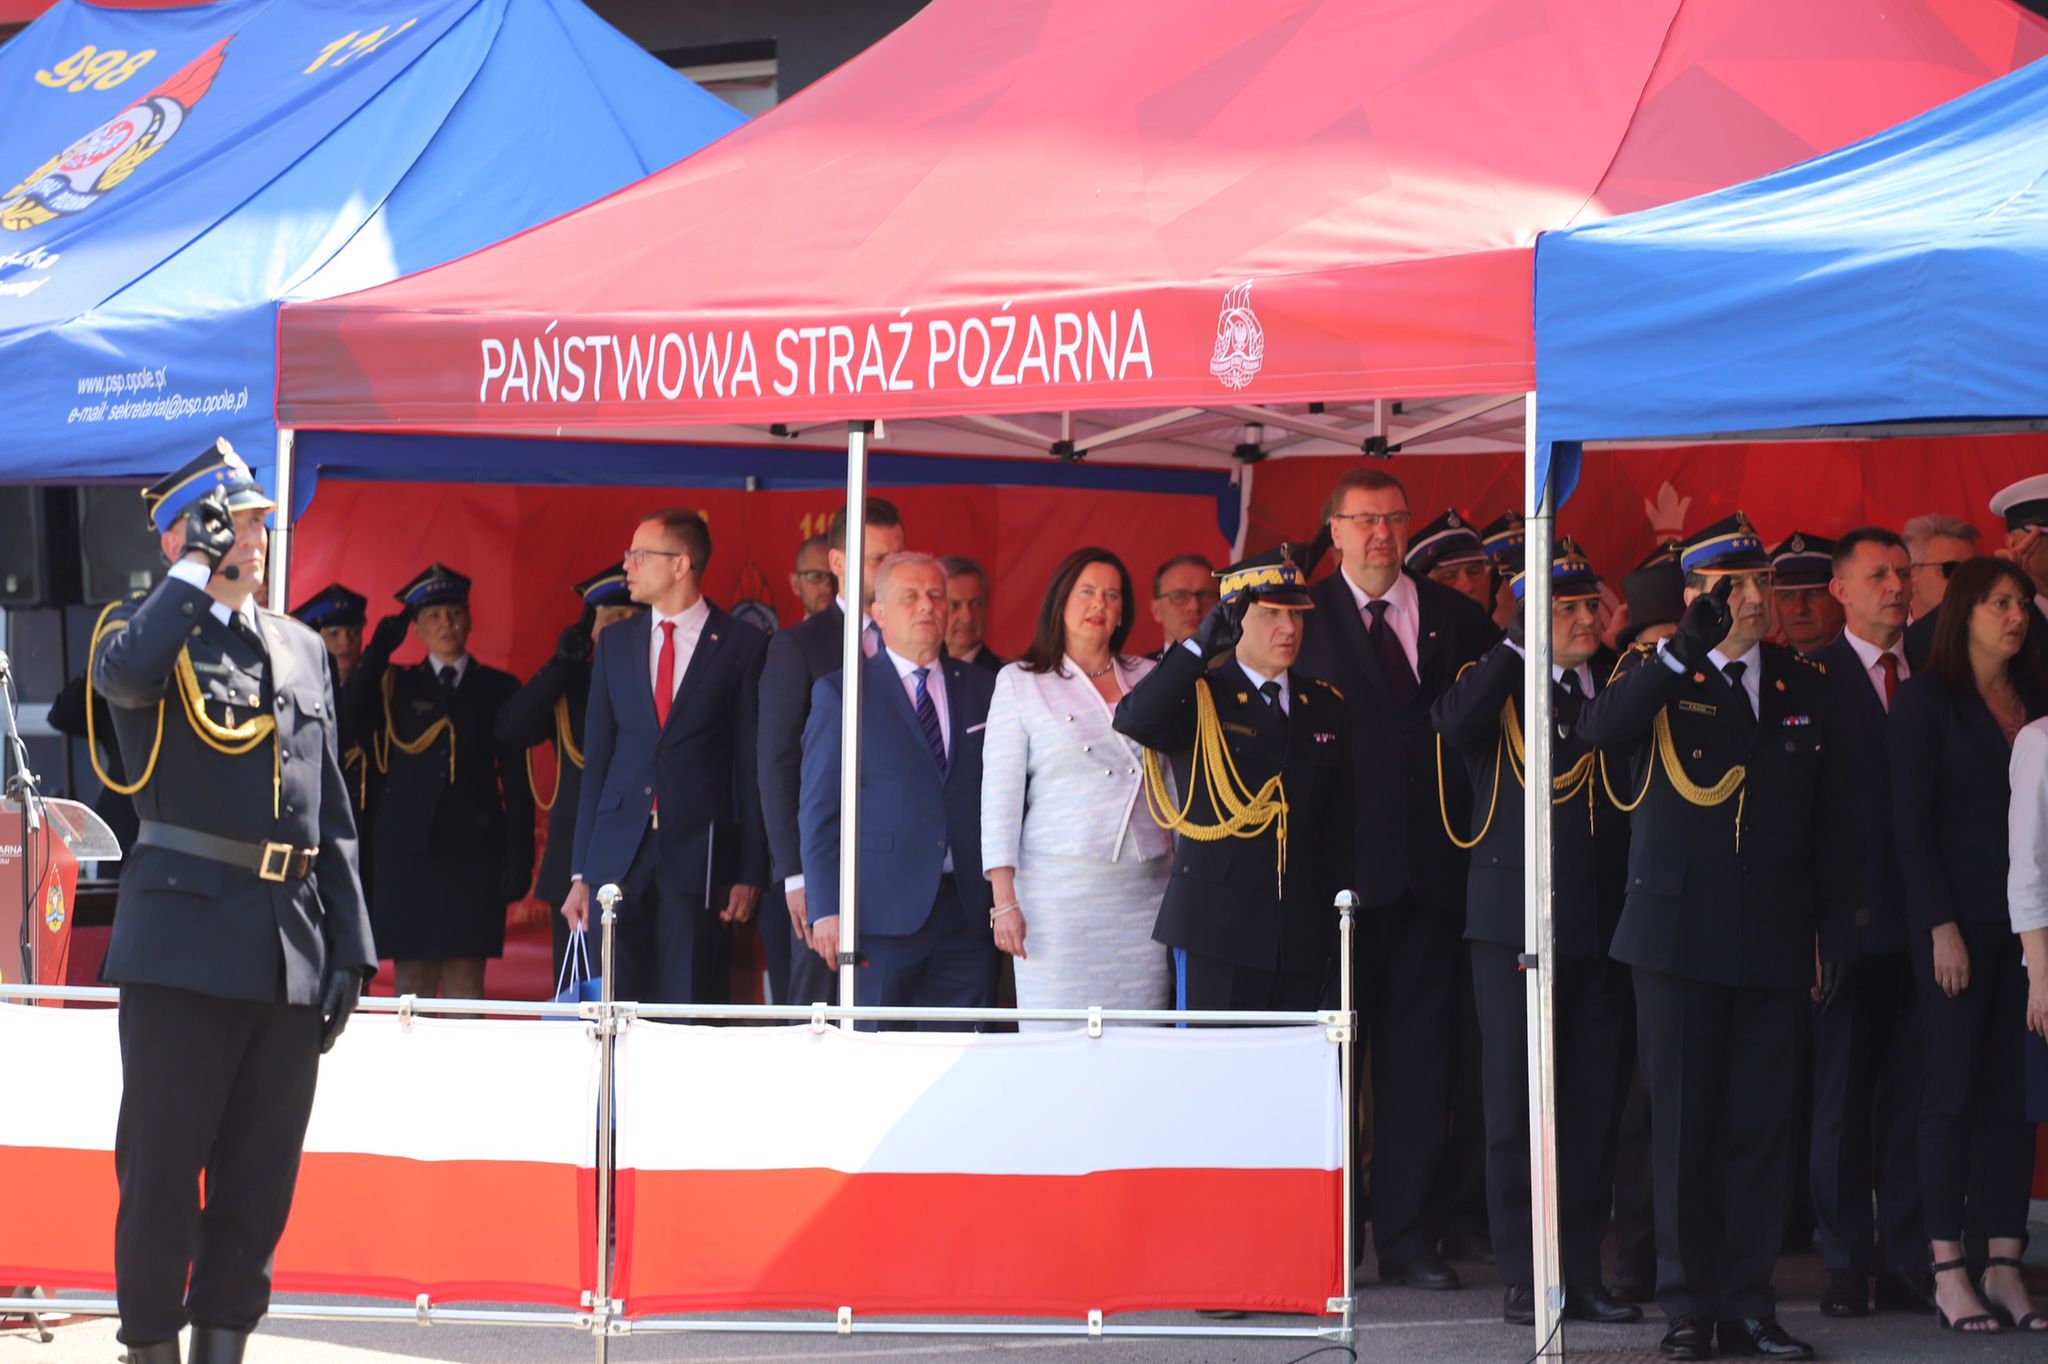 Zebrani goście pod namiotem koloru czerwonego z napisem Państwowa Straż Pożarna podczas hymnu Polski 